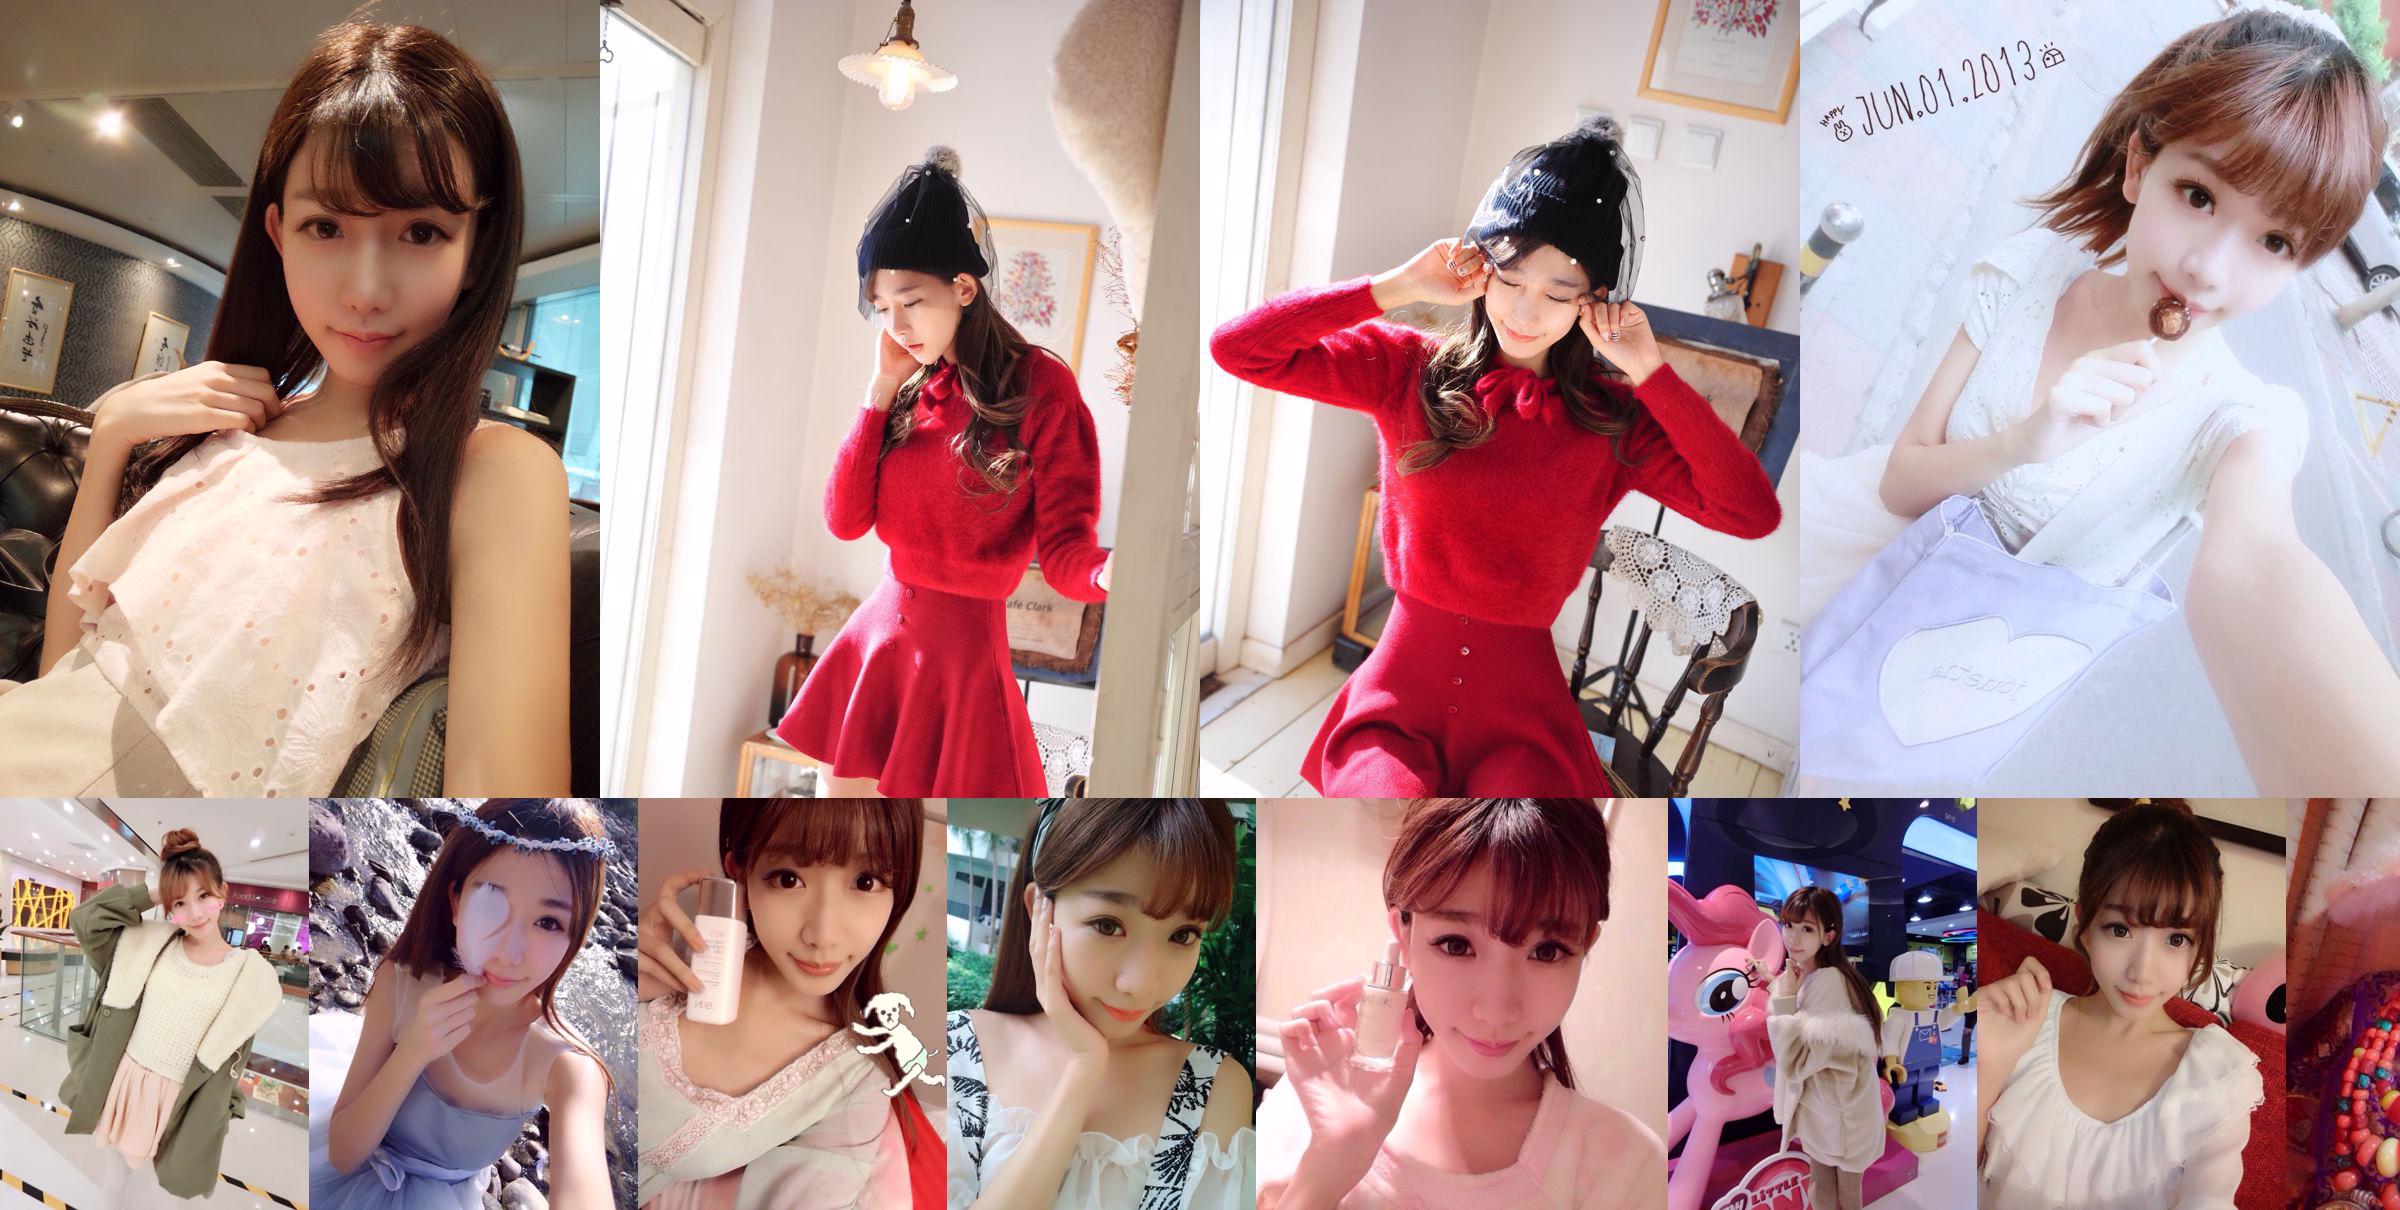 Тайваньская сестра интернет-знаменитости Чэнь Сяо "Weibo Selfie Pictures" Часть 1 Коллекция фотографий No.081e01 Страница 1